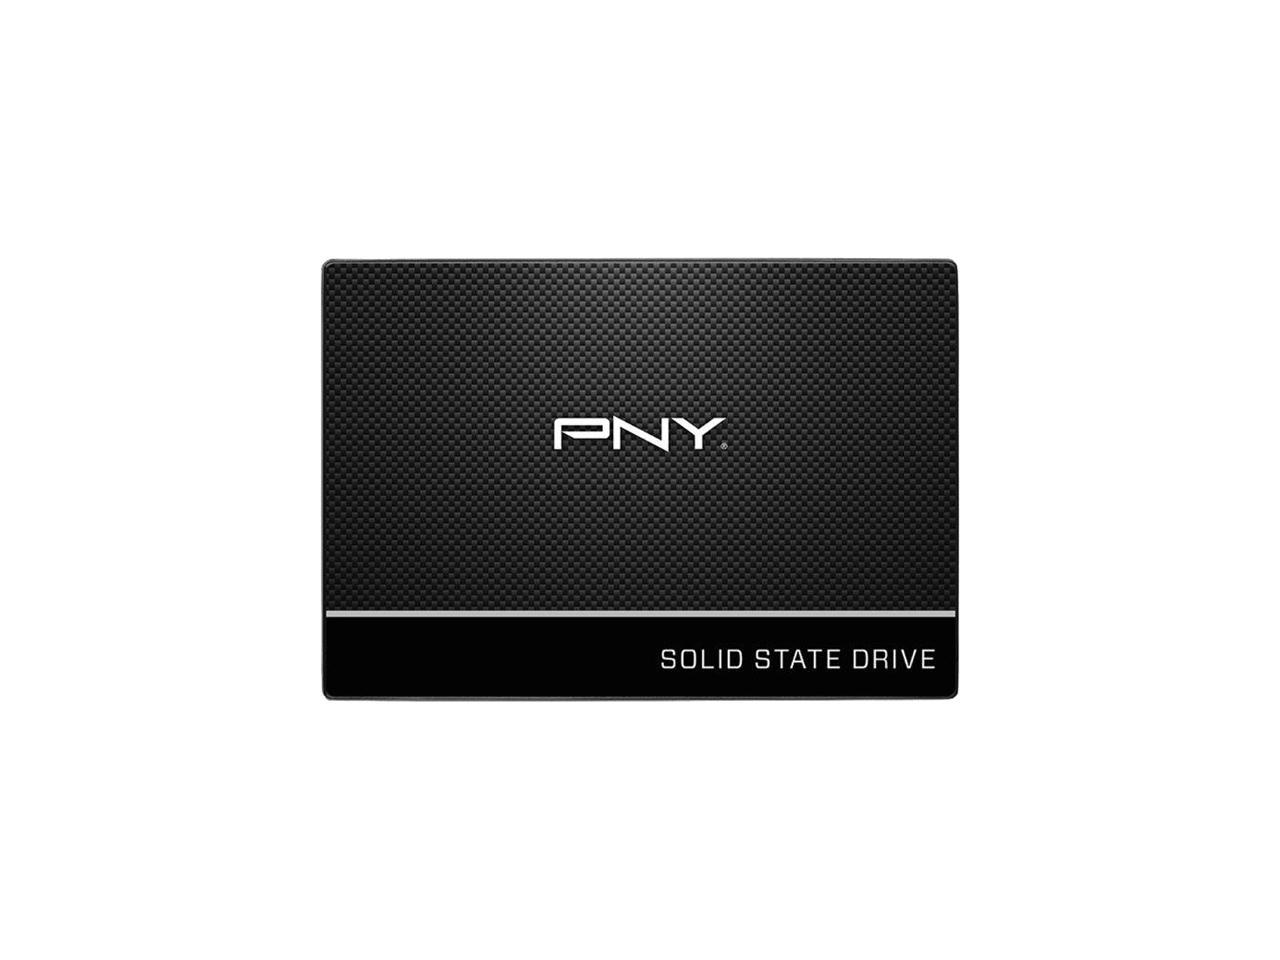 Pny cs900 120gb 25 sata iii internal solid state drive Pny Cs900 120gb 2 5 Sata Iii Internal Solid State Drive Ssd Ssd7cs900 120 R 751492597843 Ebay